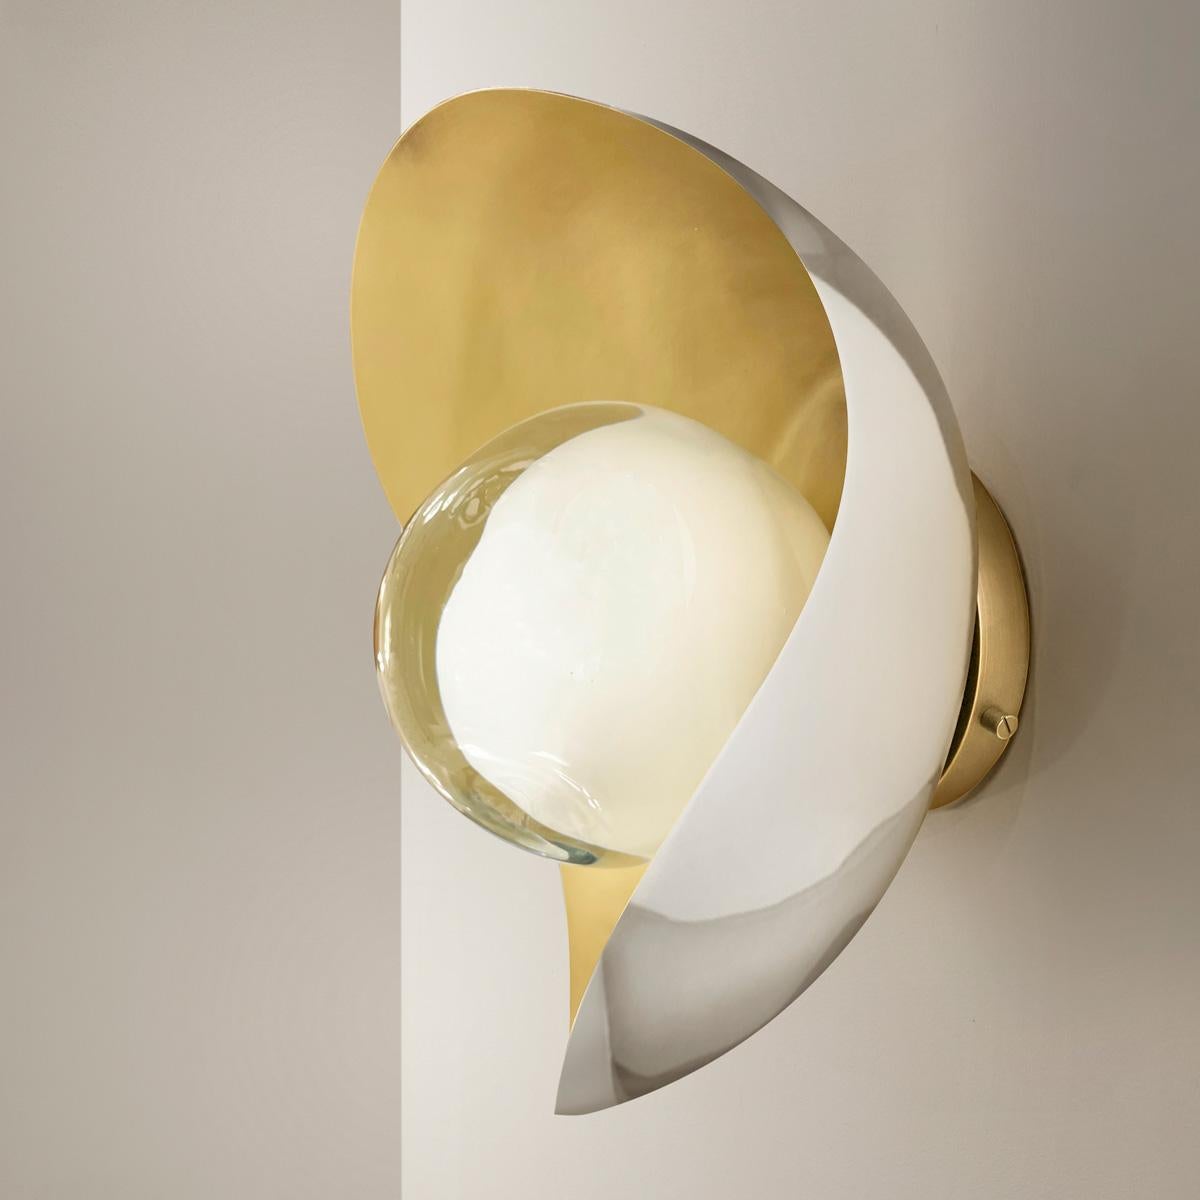 Contemporary Perla Wall Light by Gaspare Asaro-Satin Brass/Acqua Finish For Sale